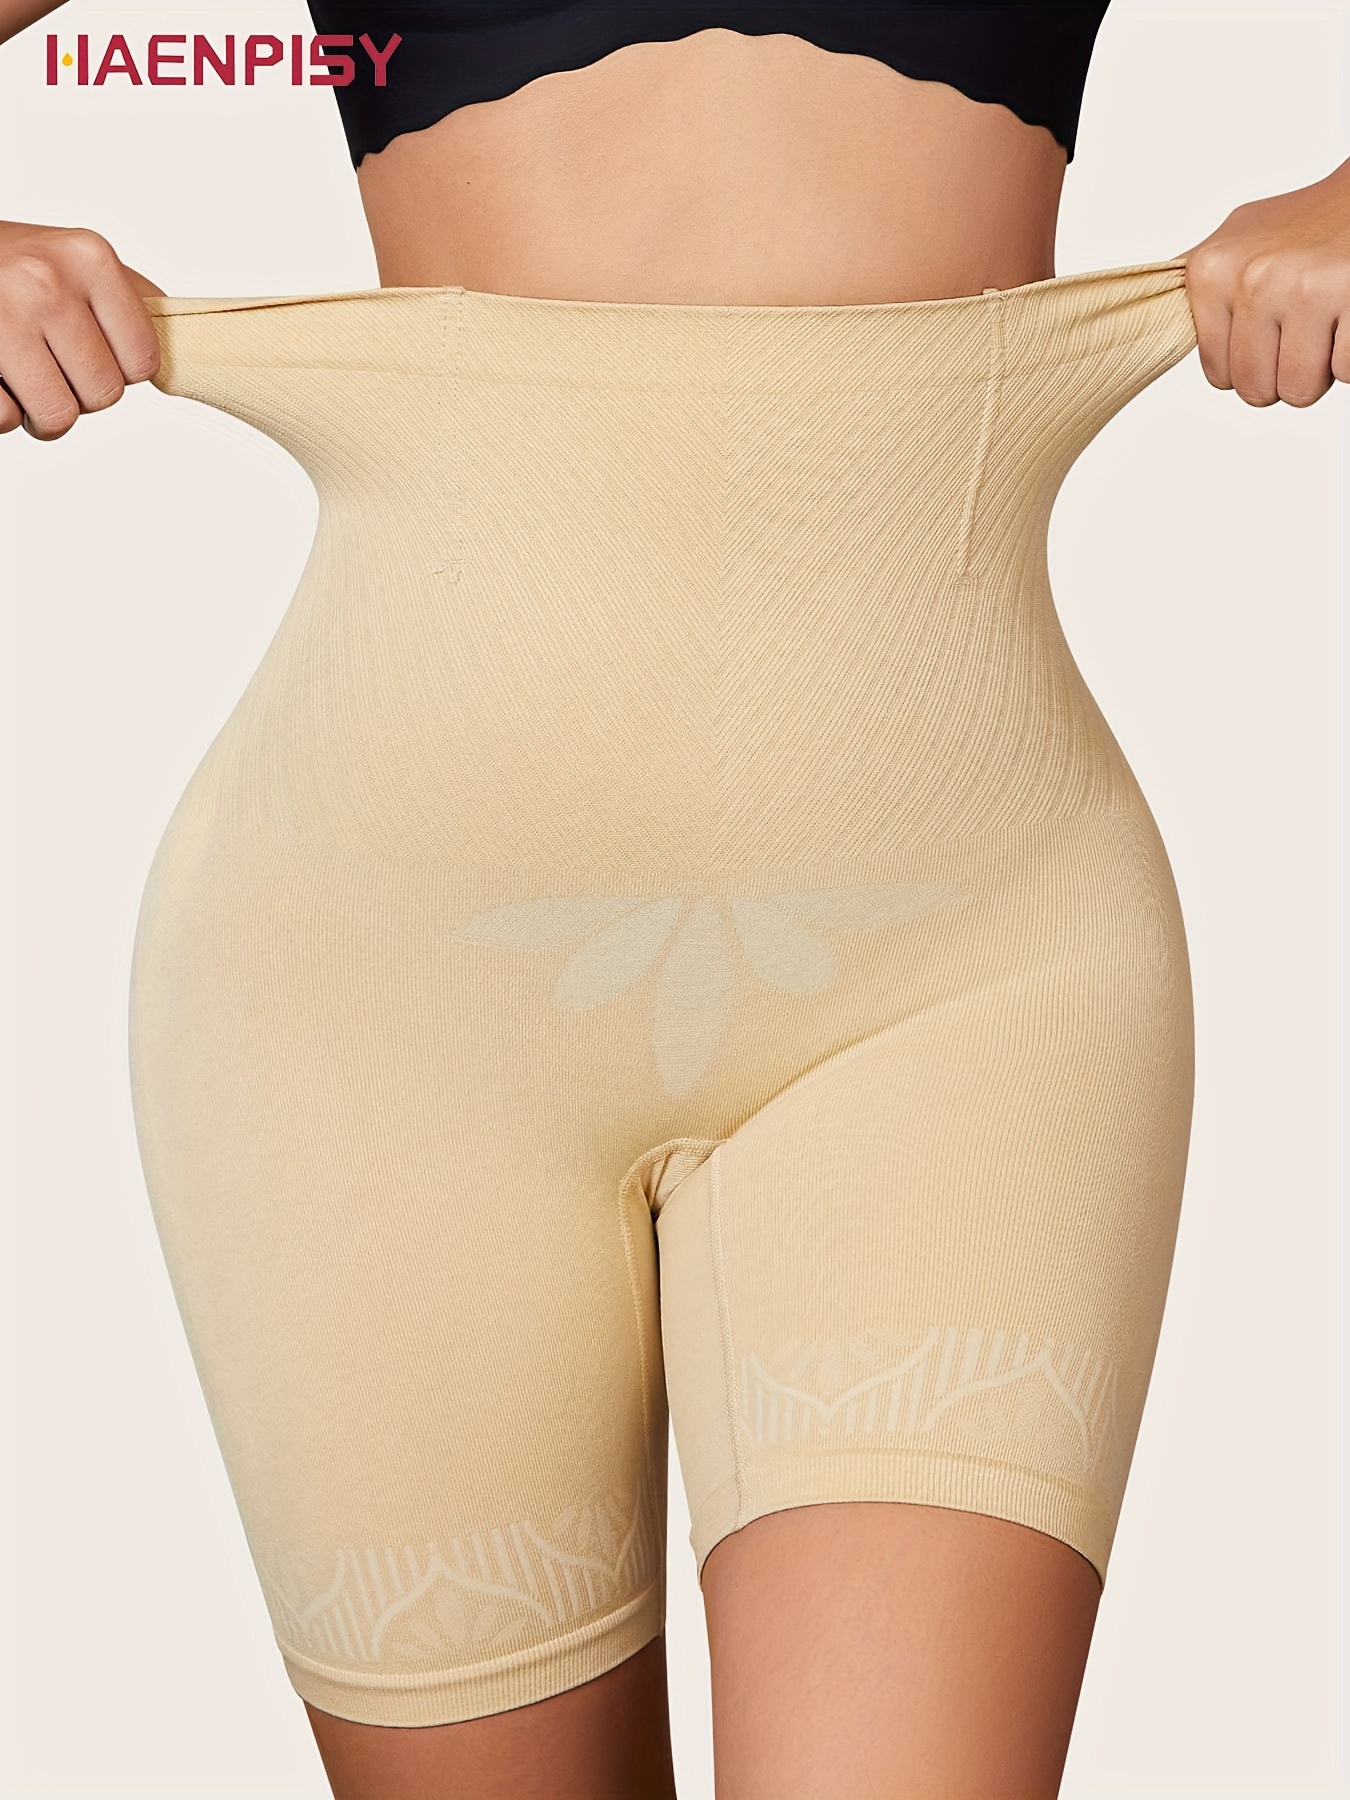 HAENPISY Womens Tummy Control Body Shaper Shorts Butt Lifter